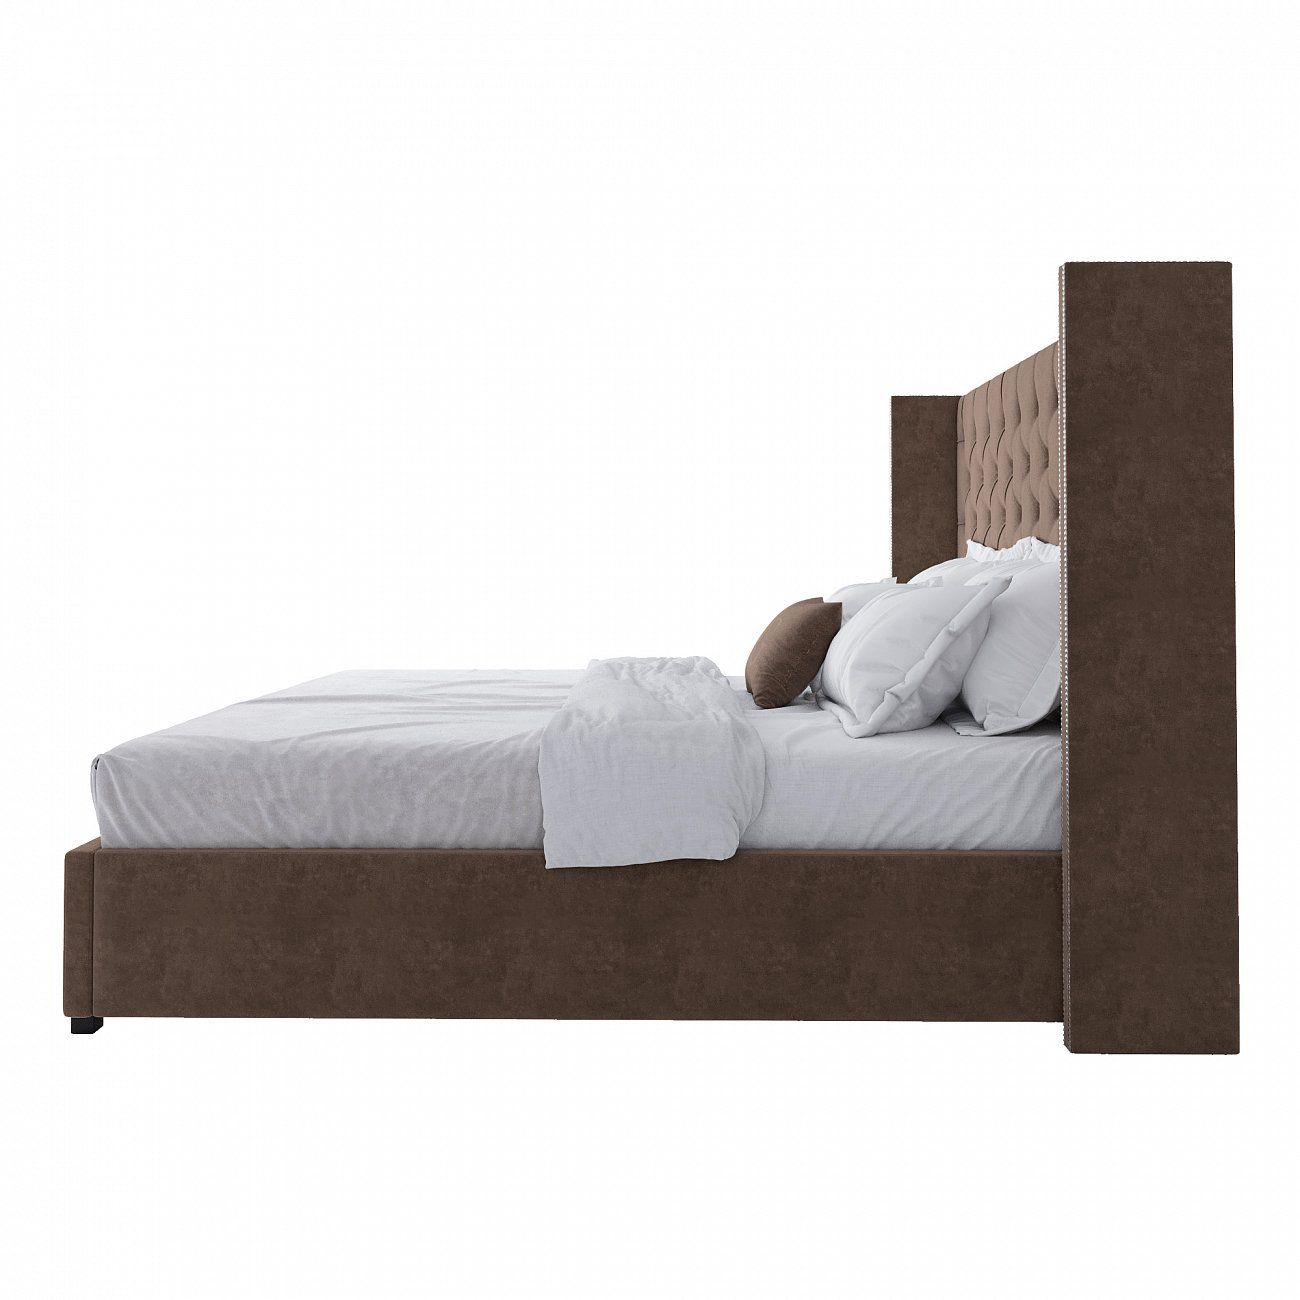 Кровать двуспальная 200х200 см коричневая с гвоздиками и каретной стяжкой Wing